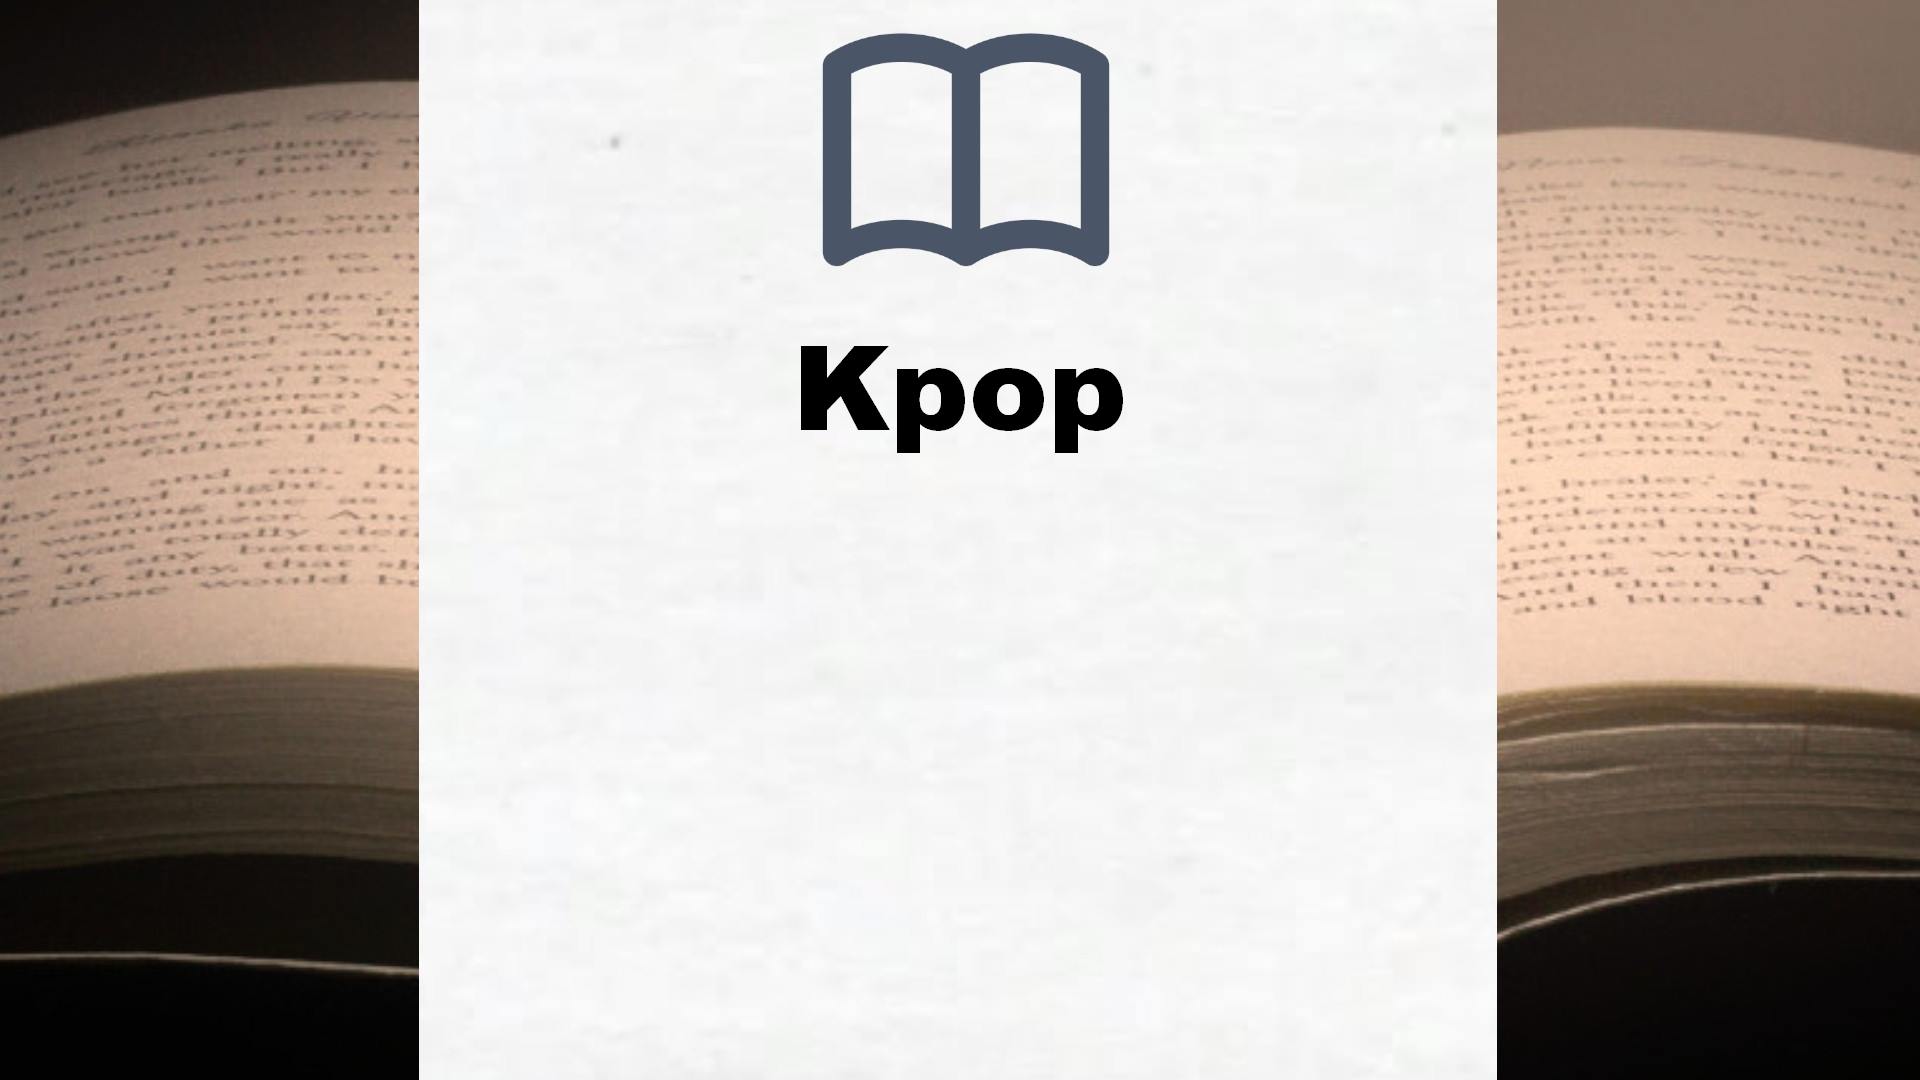 Bücher über Kpop